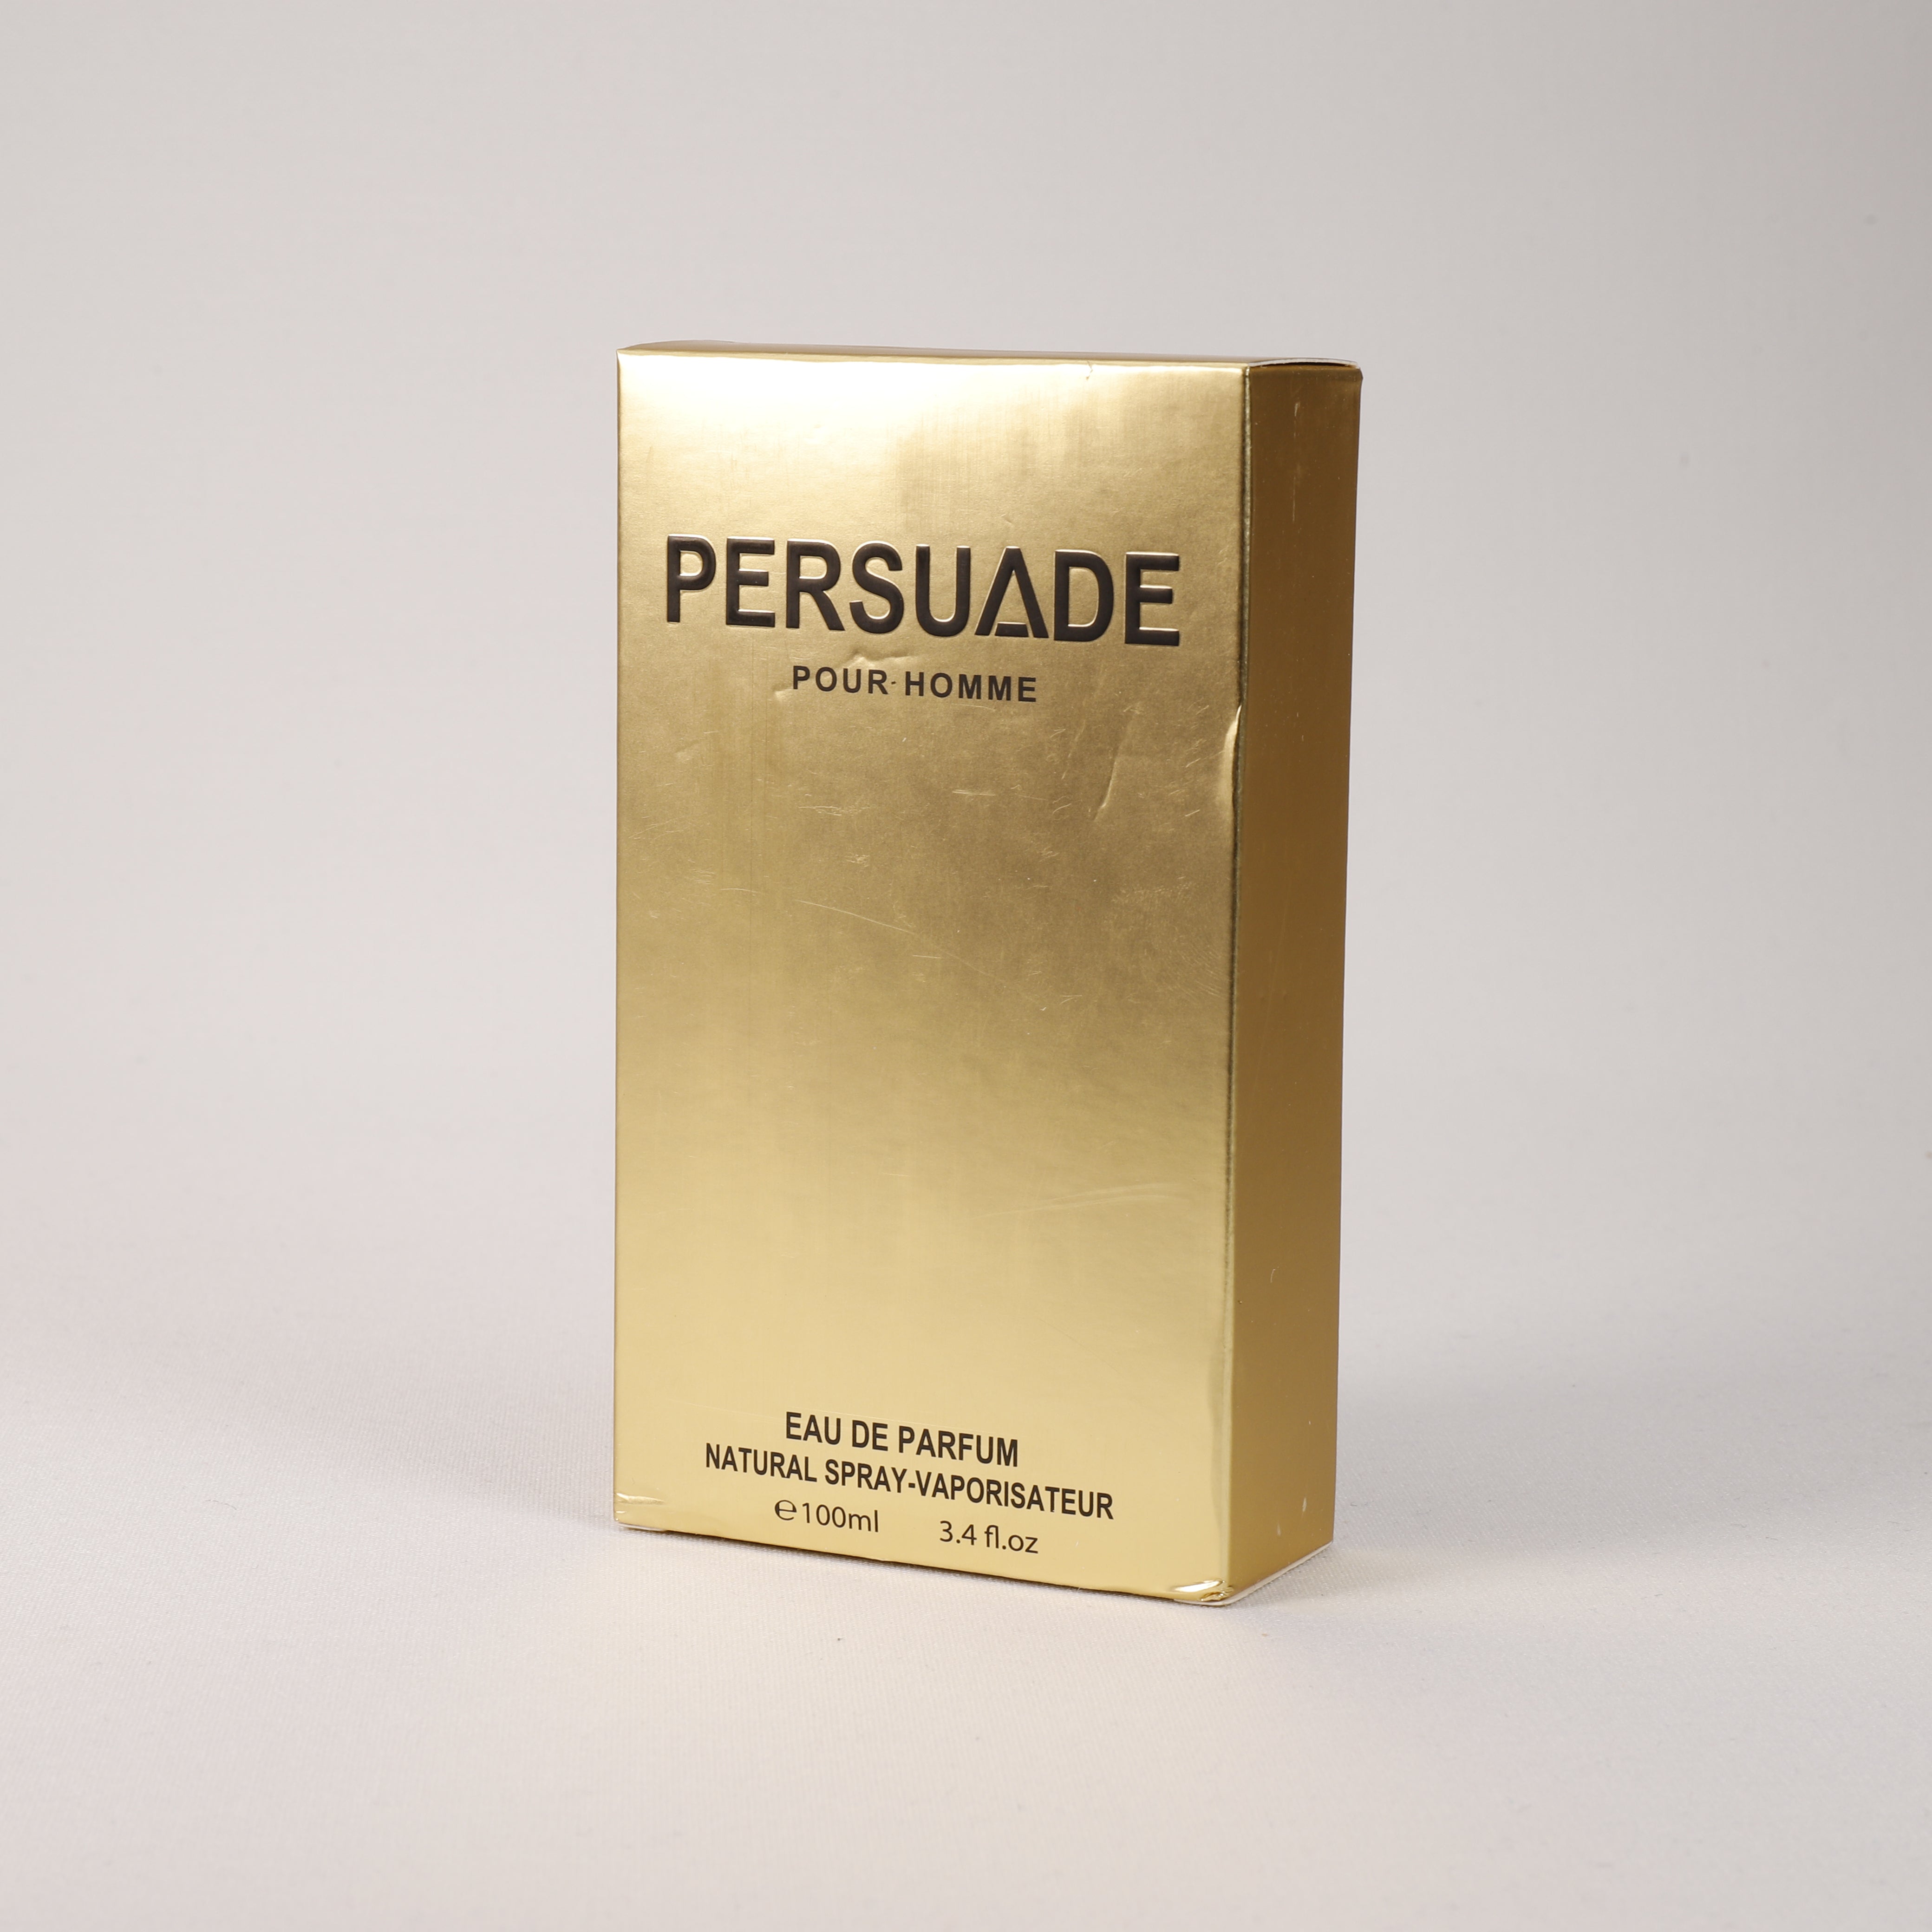 Persuade für Herren, Vaporizer mit natürlichem Spray, 100 ml, Duft, Parfum, TOP Parfüm, NEU OVP